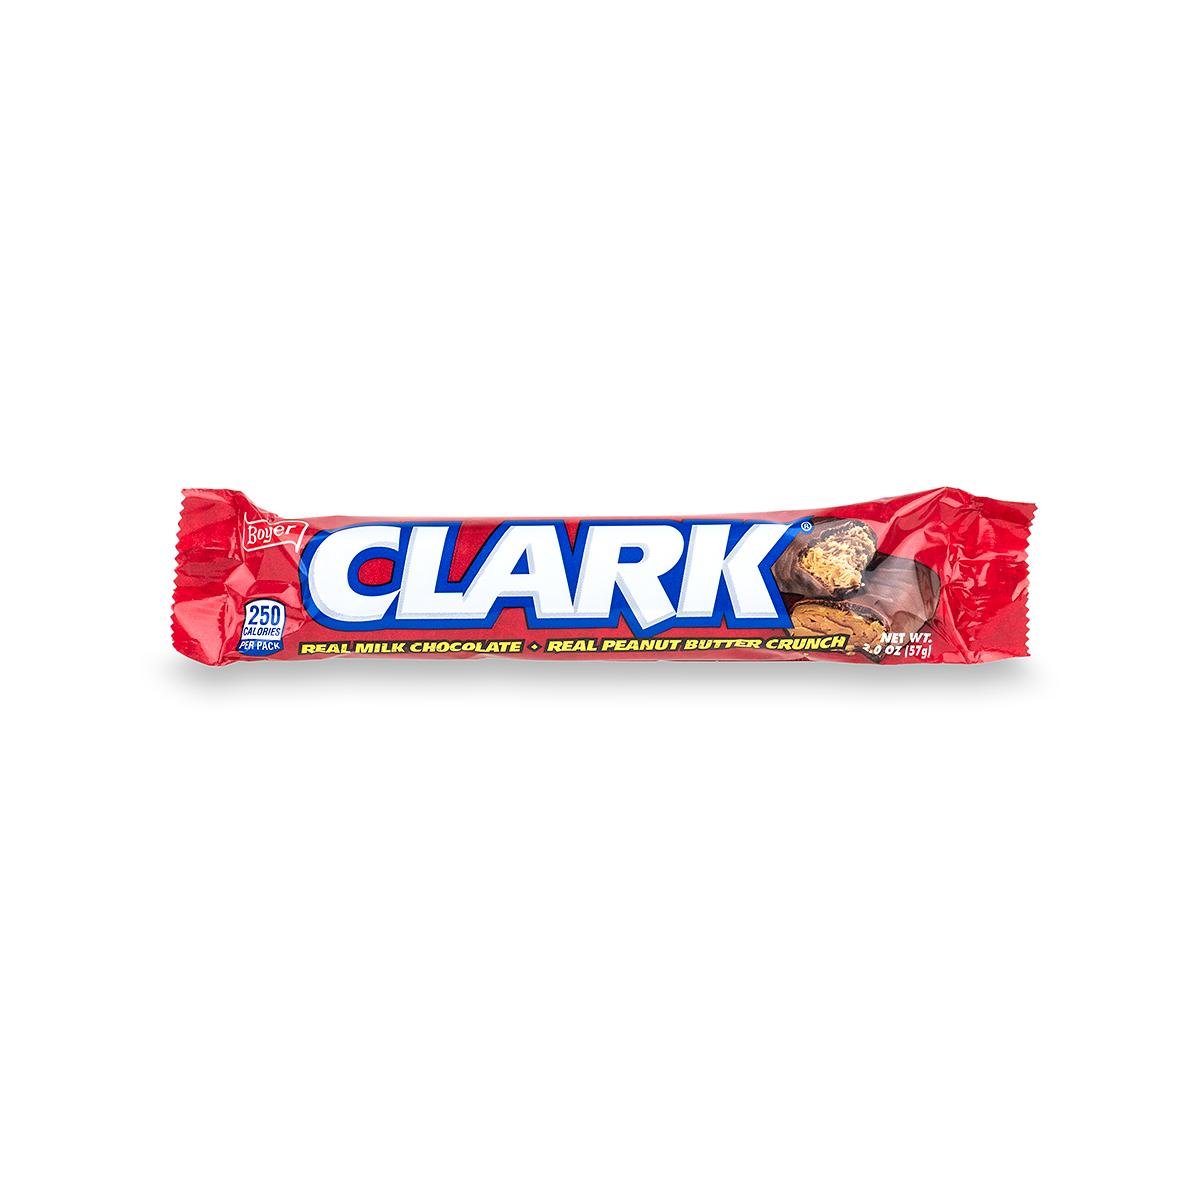  Clark Candy Bar